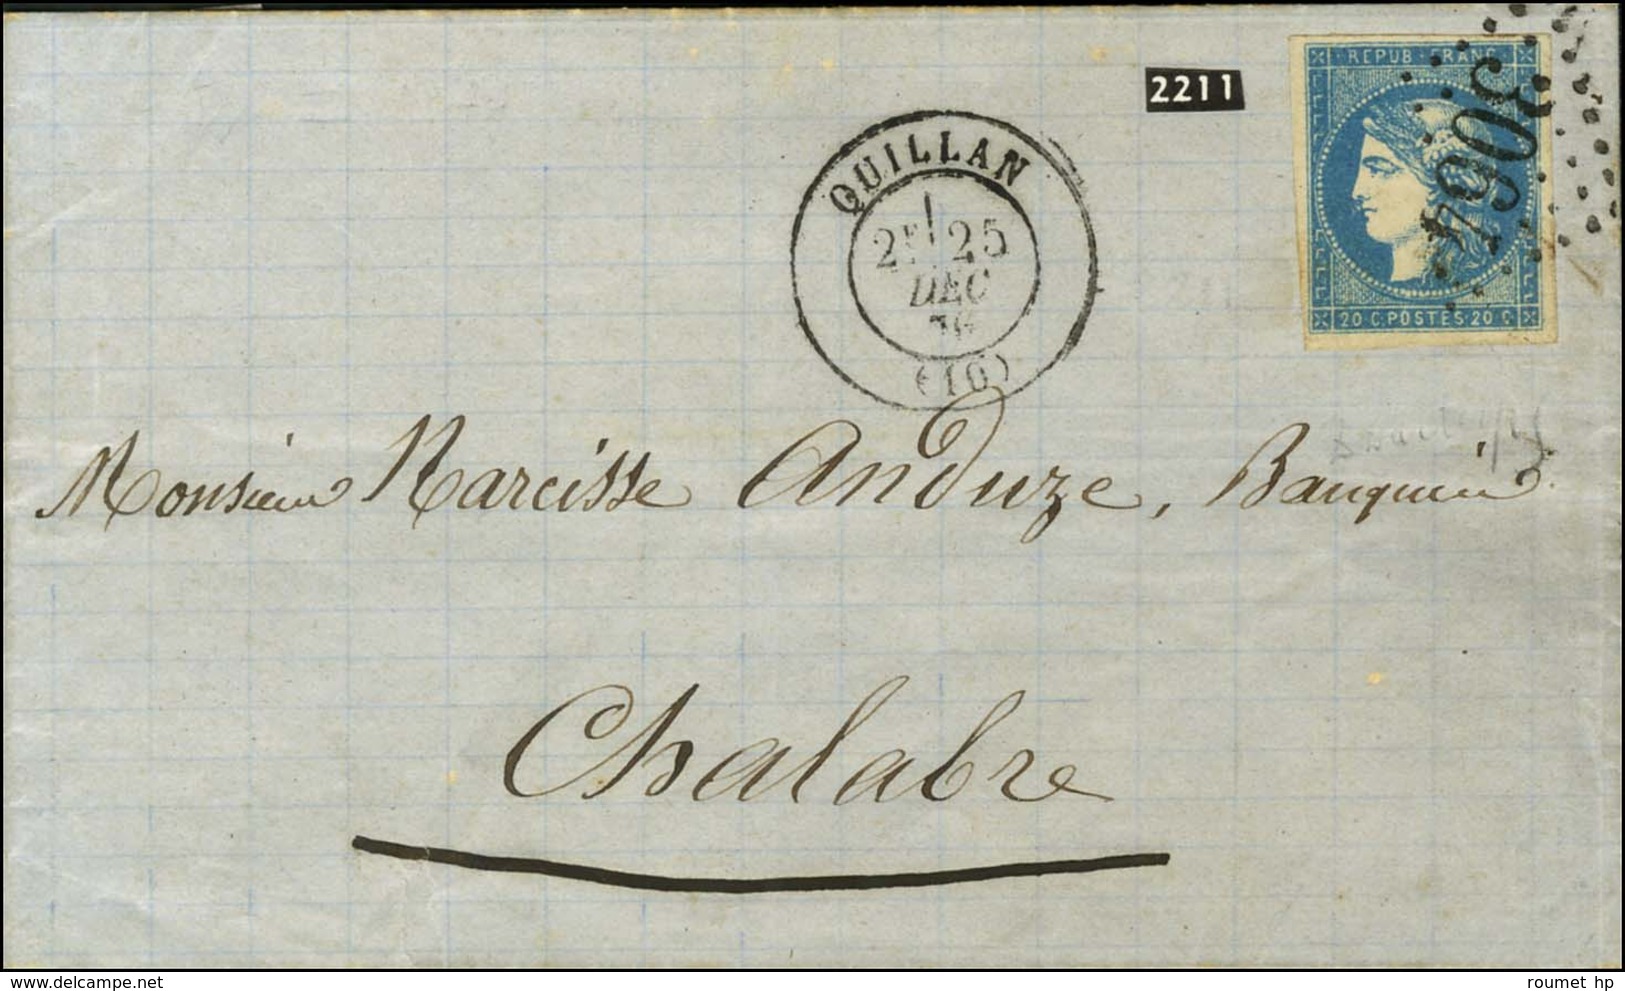 GC 3064 / N° 44 Belles Marges Càd T 17 QUILLAN (10). 1870. - TB / SUP. - R. - 1870 Emission De Bordeaux